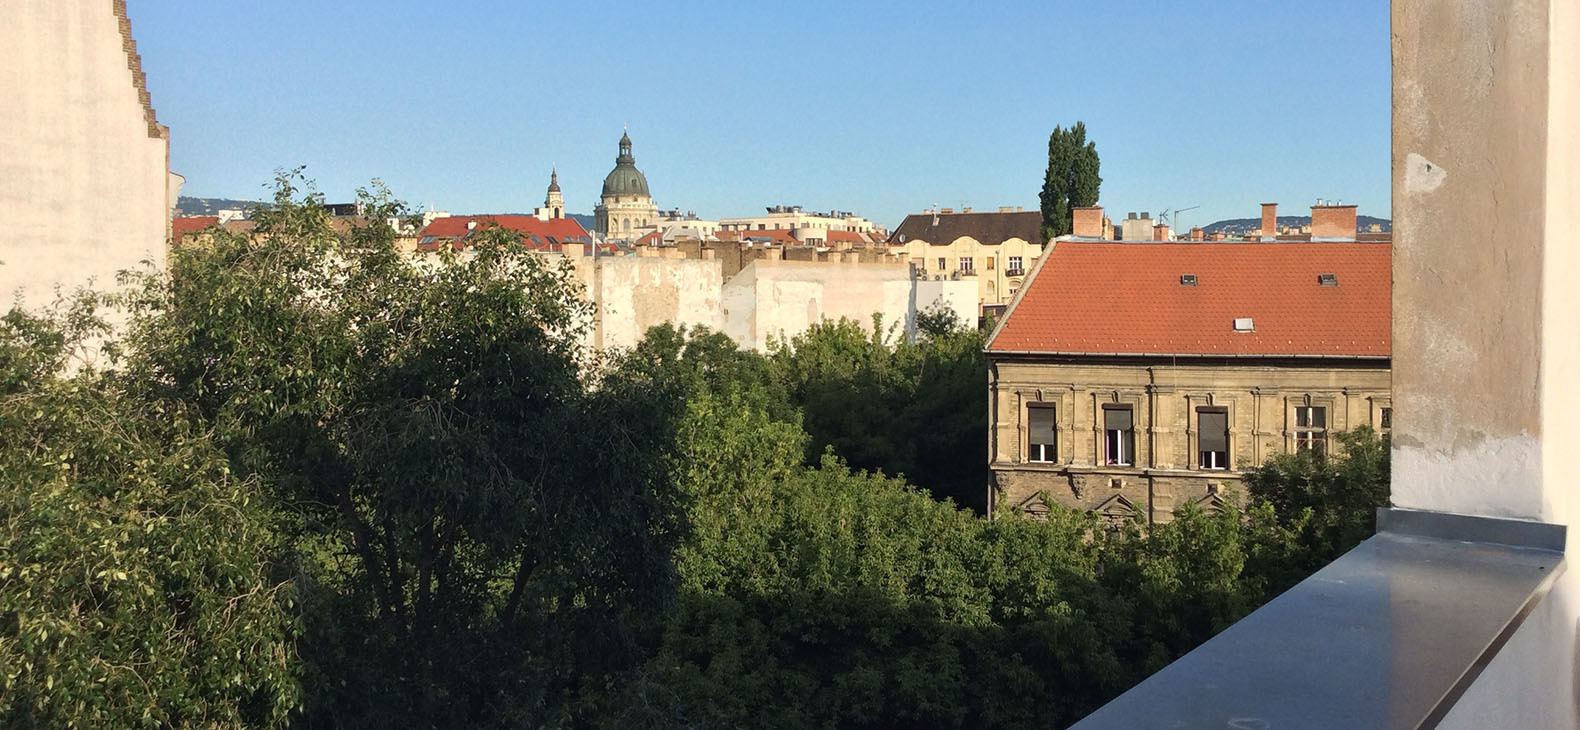 Interner Link: Zur Veranstaltung Fokus > Budapest